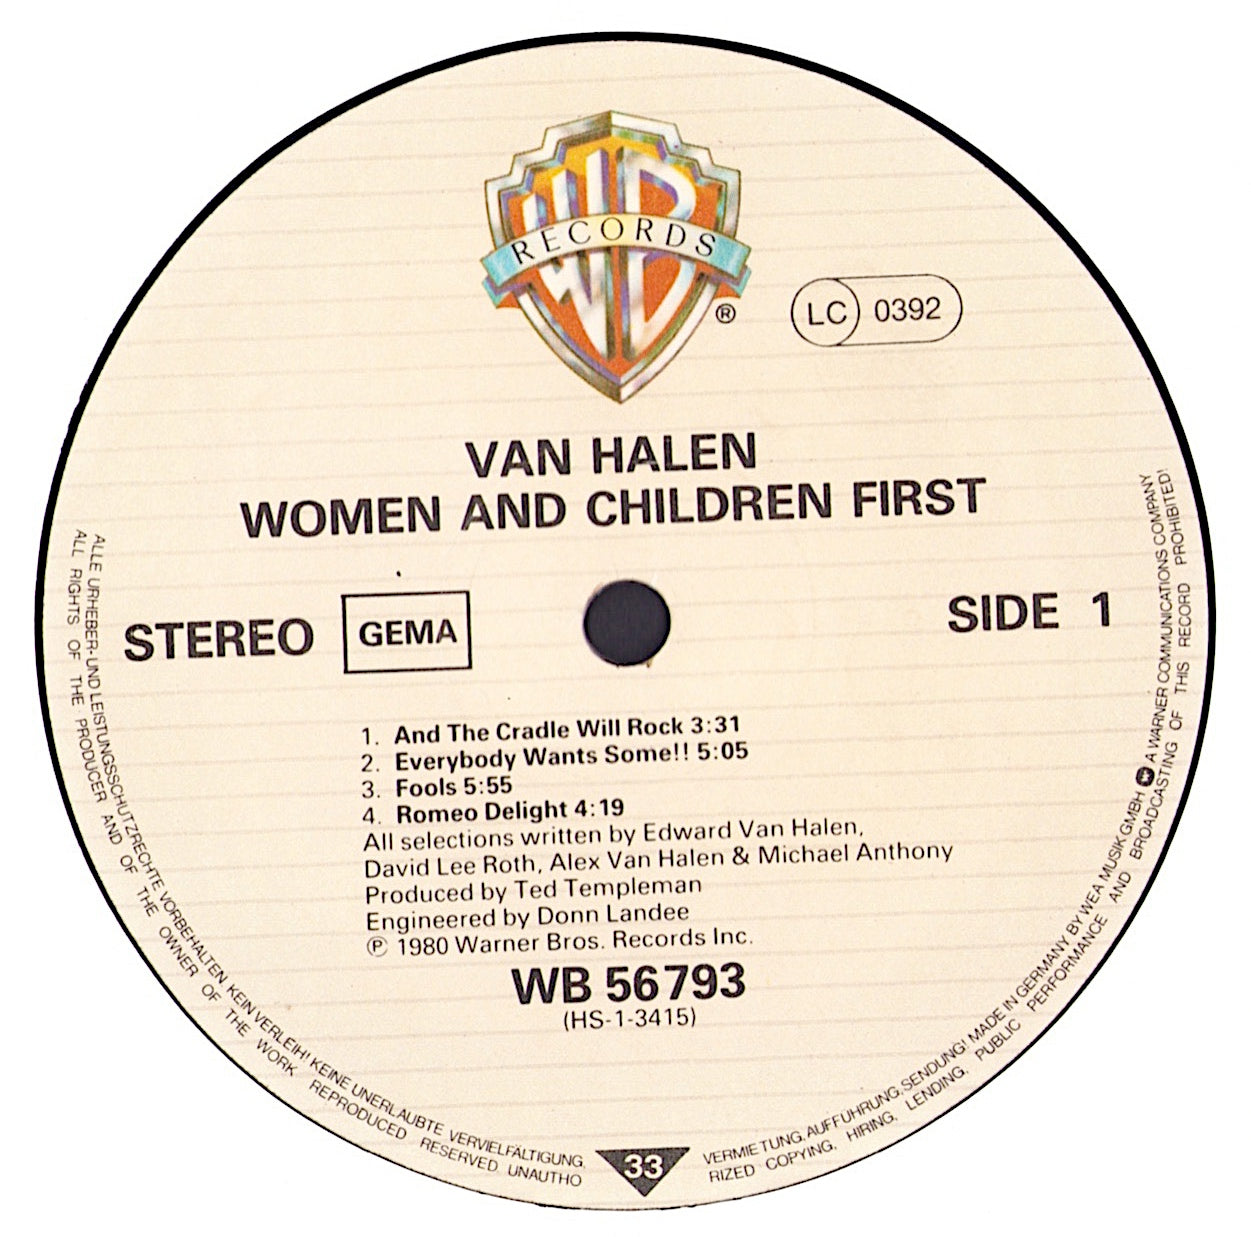 Van Halen - Women And Children First Vinyl LP + Poster